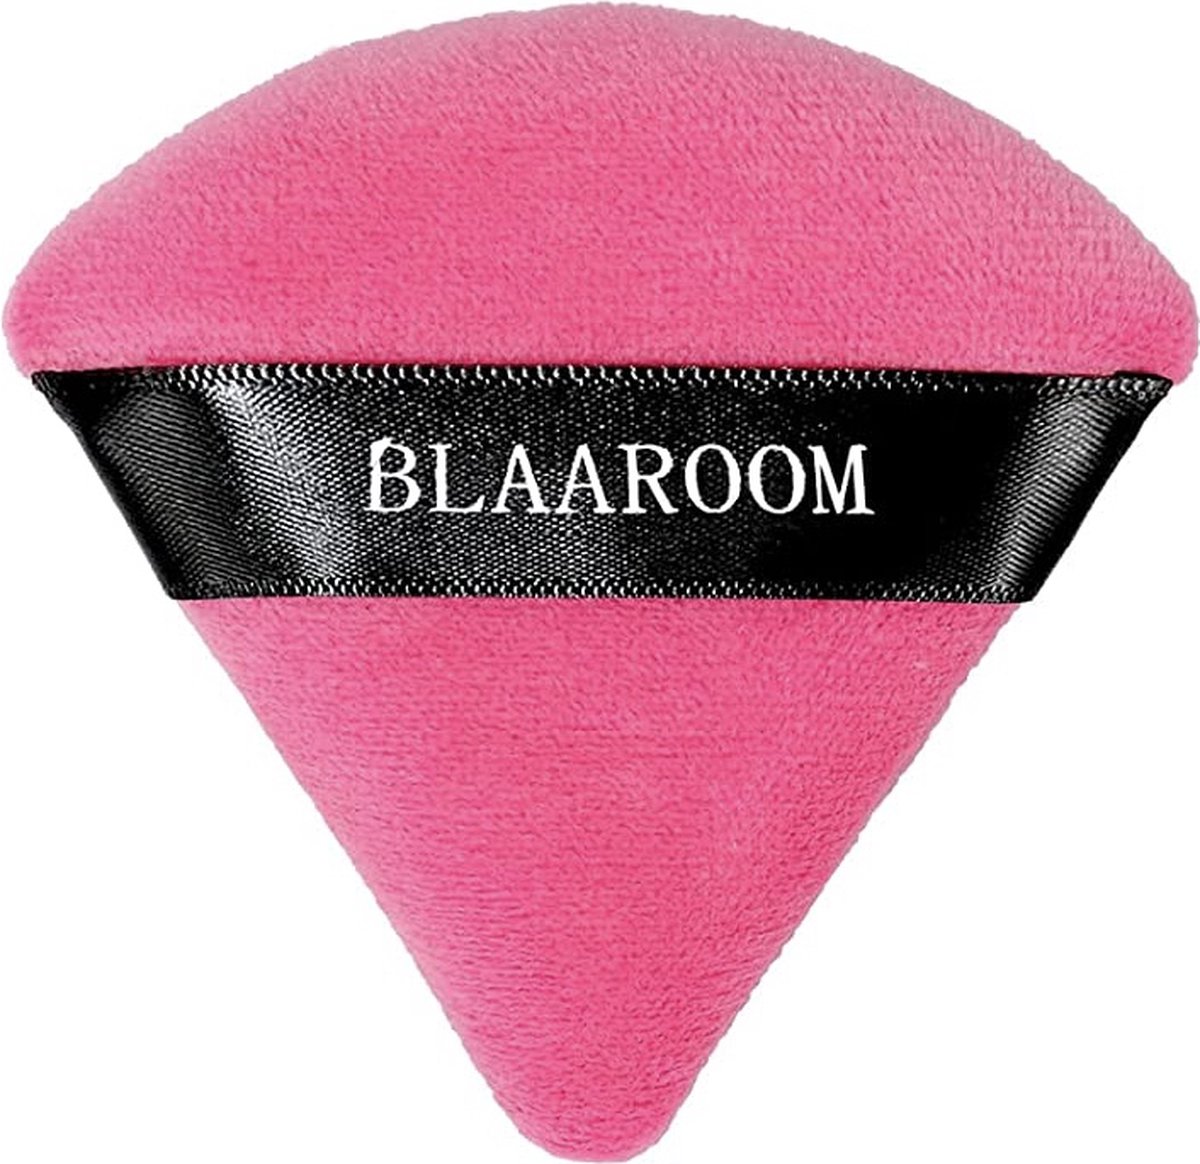 Make up spons Blaaroom / Roze